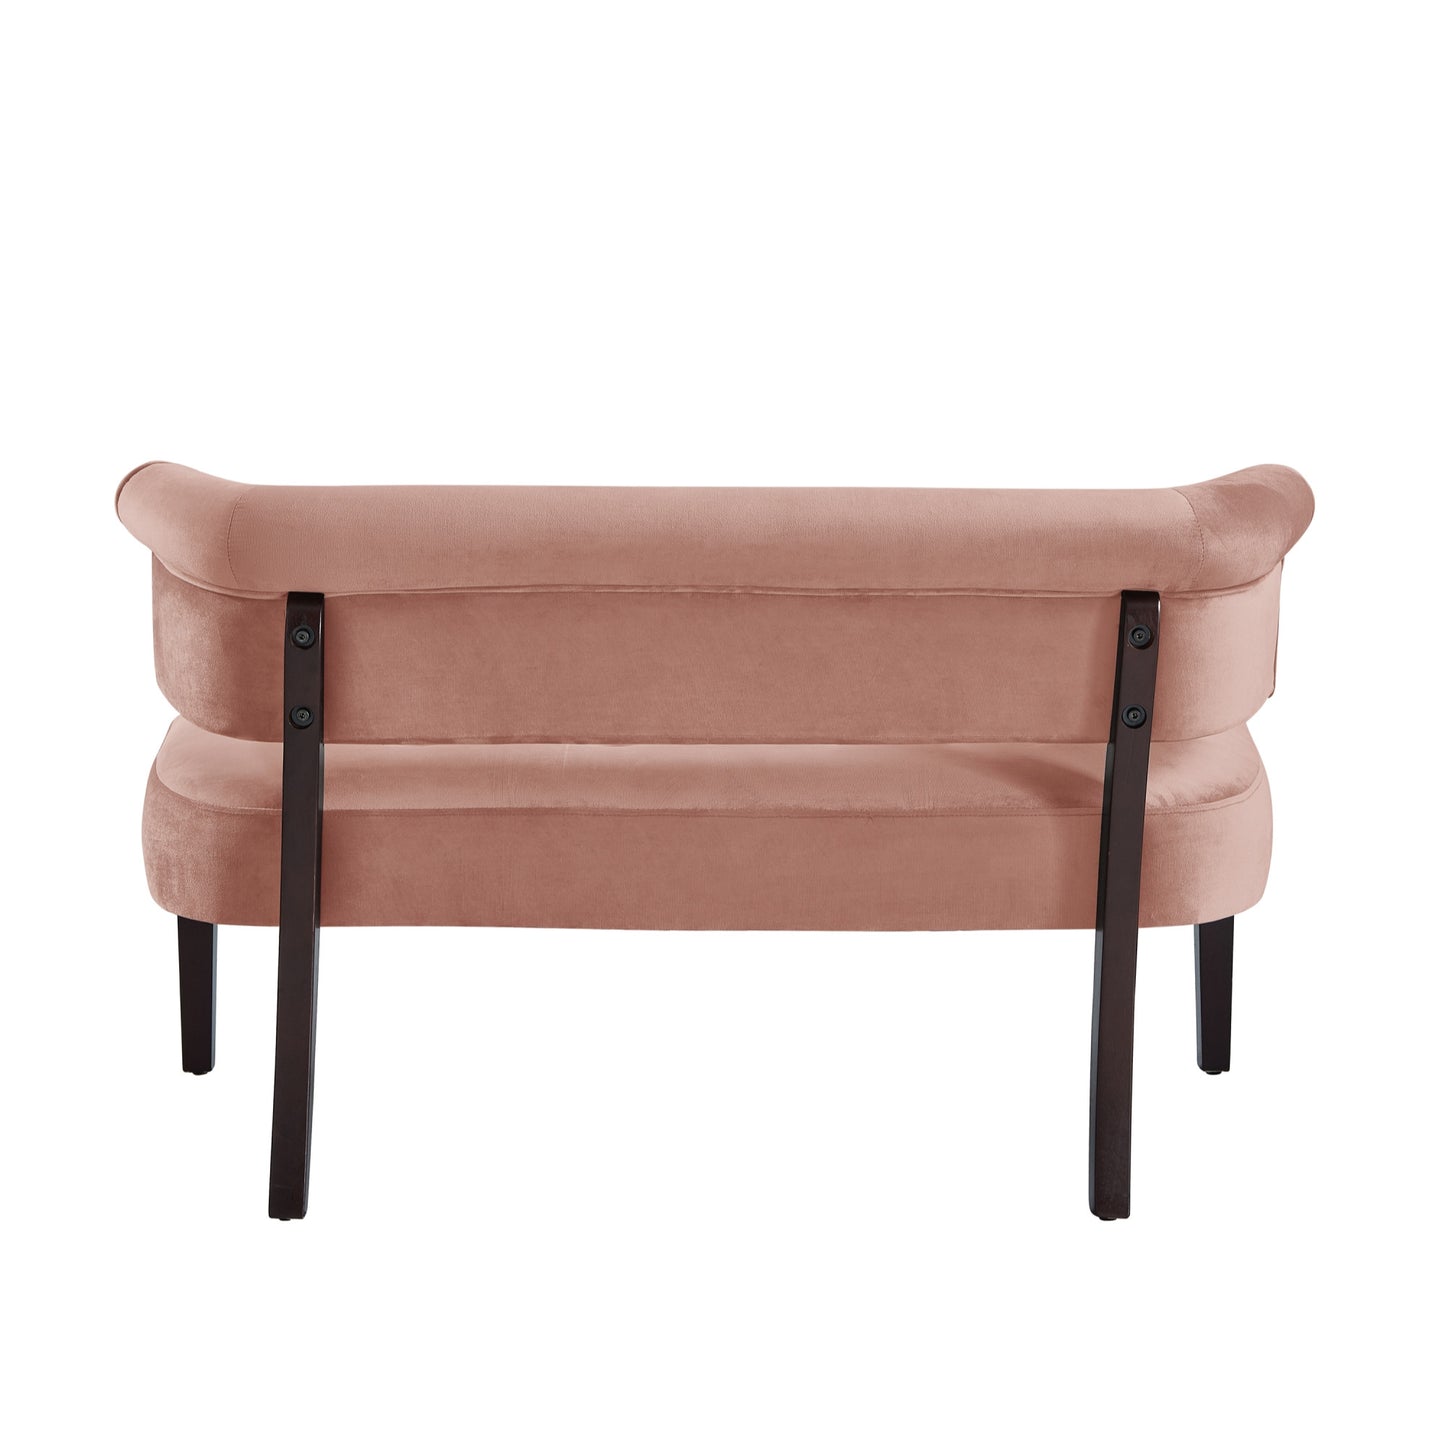 48" Blush And Brown Upholstered Velvet Bench